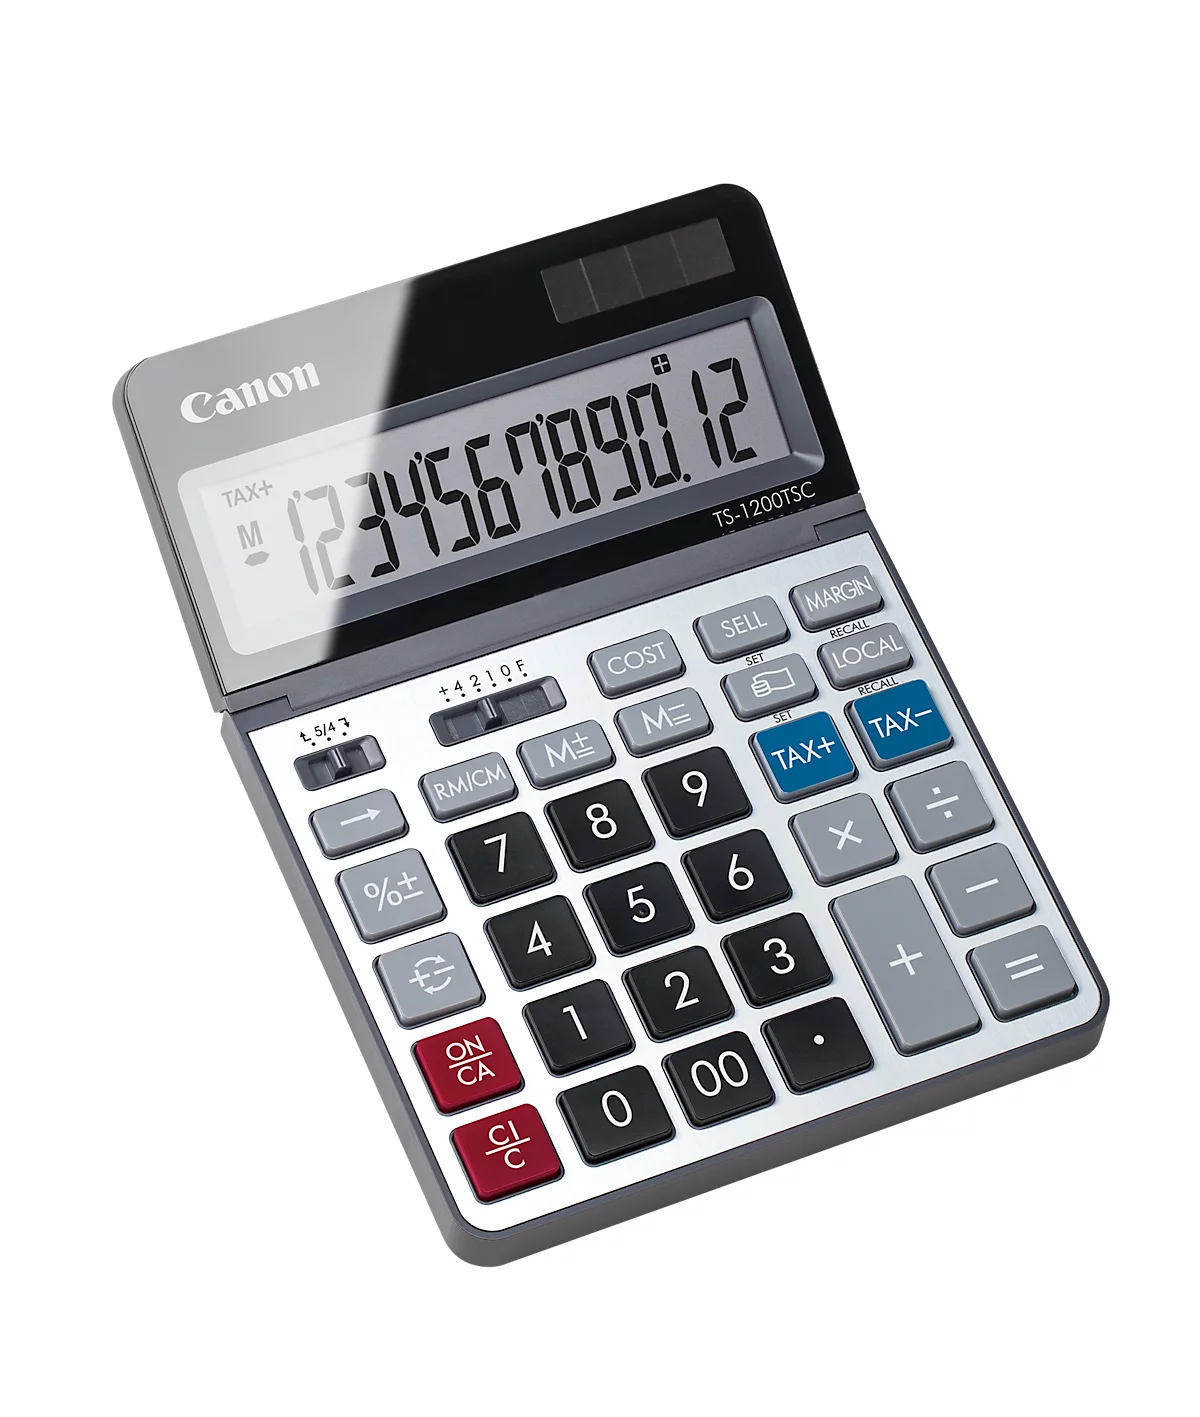 Calculadora de sobremesa Canon TS-1200TSC, pantalla LCD de 12 dígitos y plegable, con conversión de divisas, alimentación solar y a pilas, plástico y metal, plata